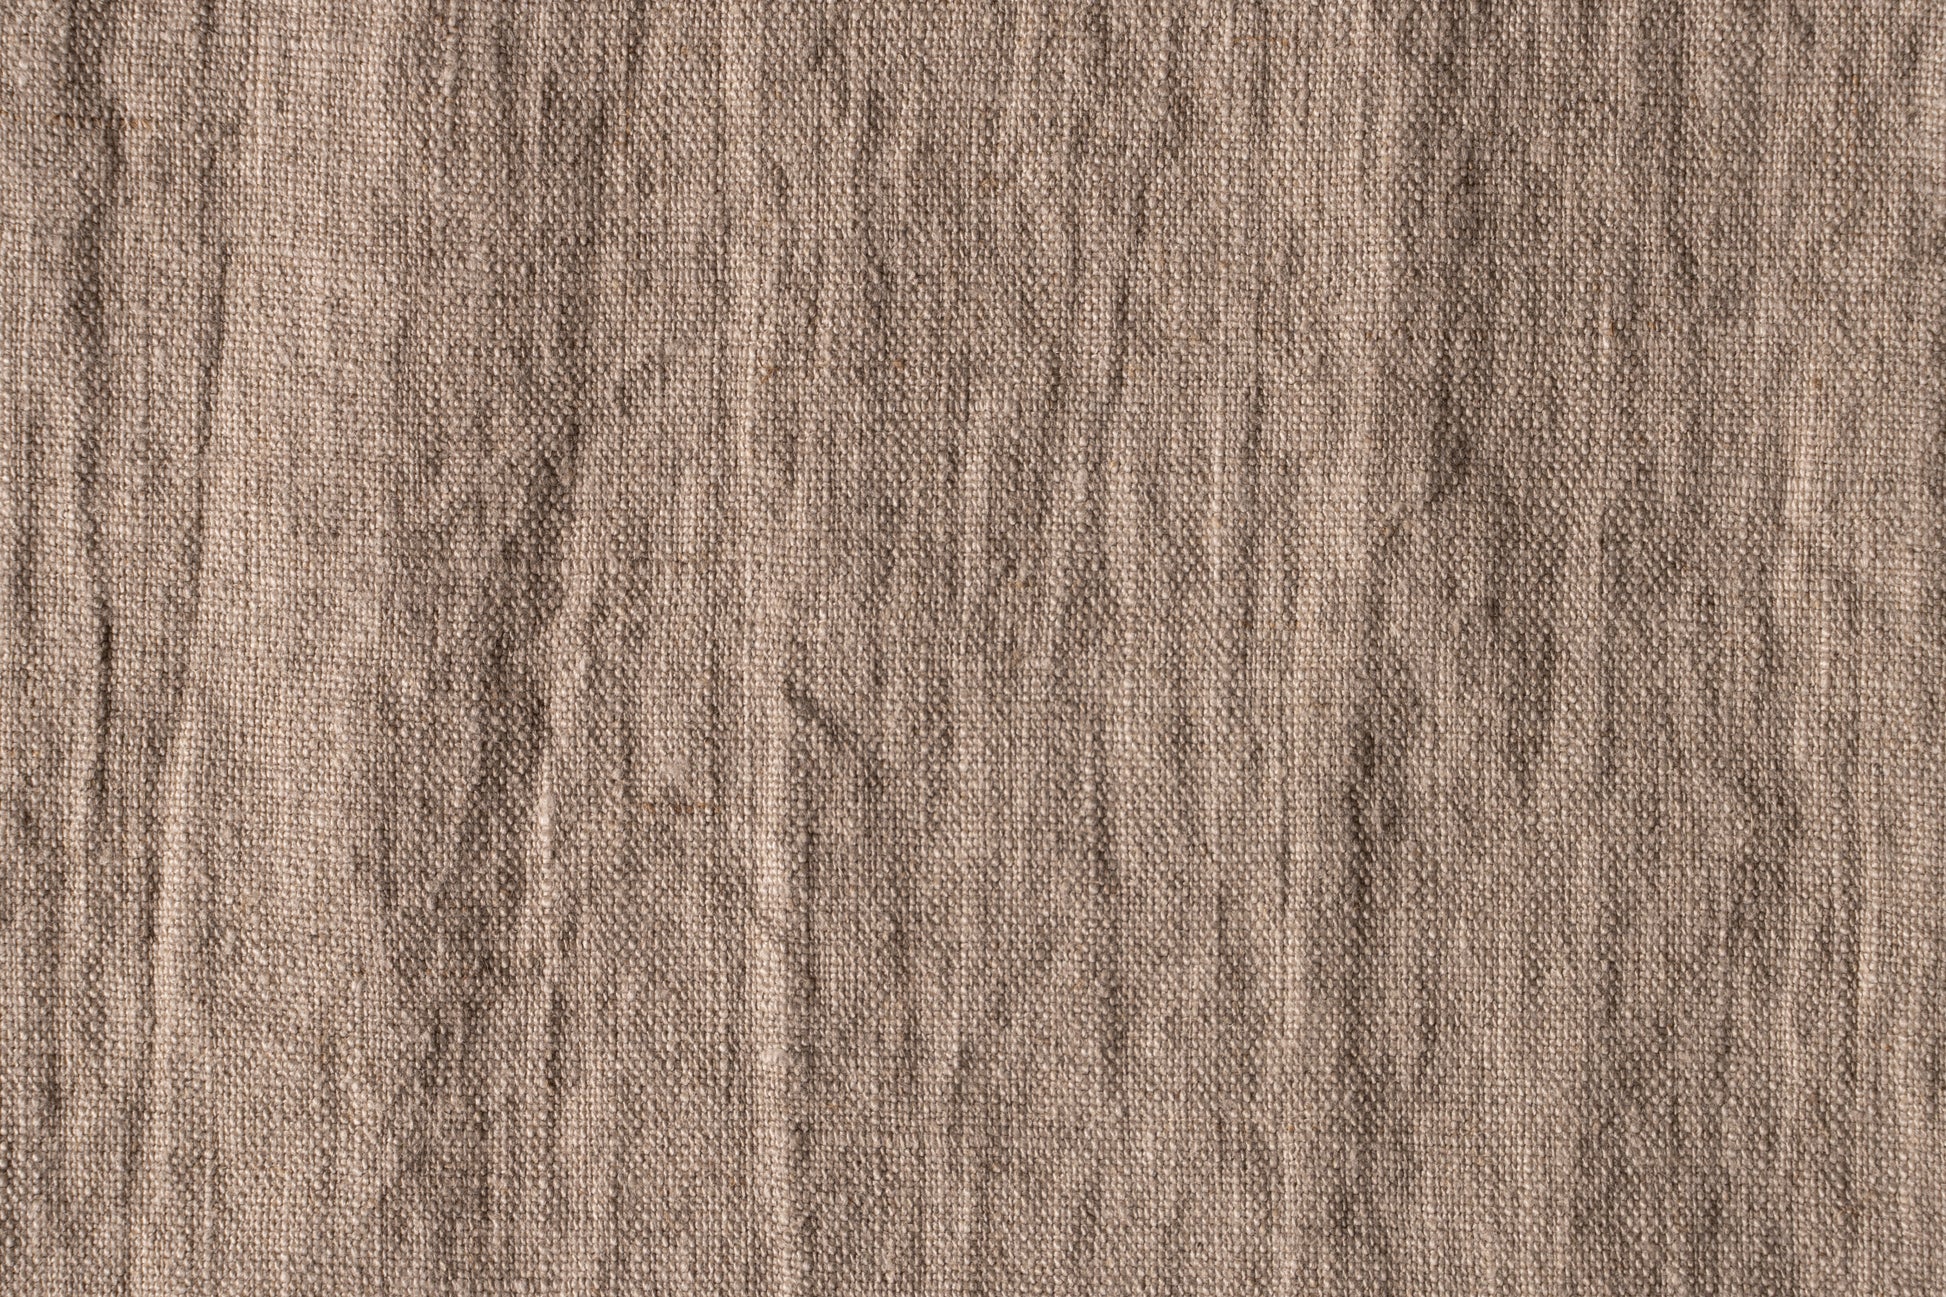 Belgian_Dark-Mud-Brown-12 - 100% Linen - 7.5 Oz - Solid